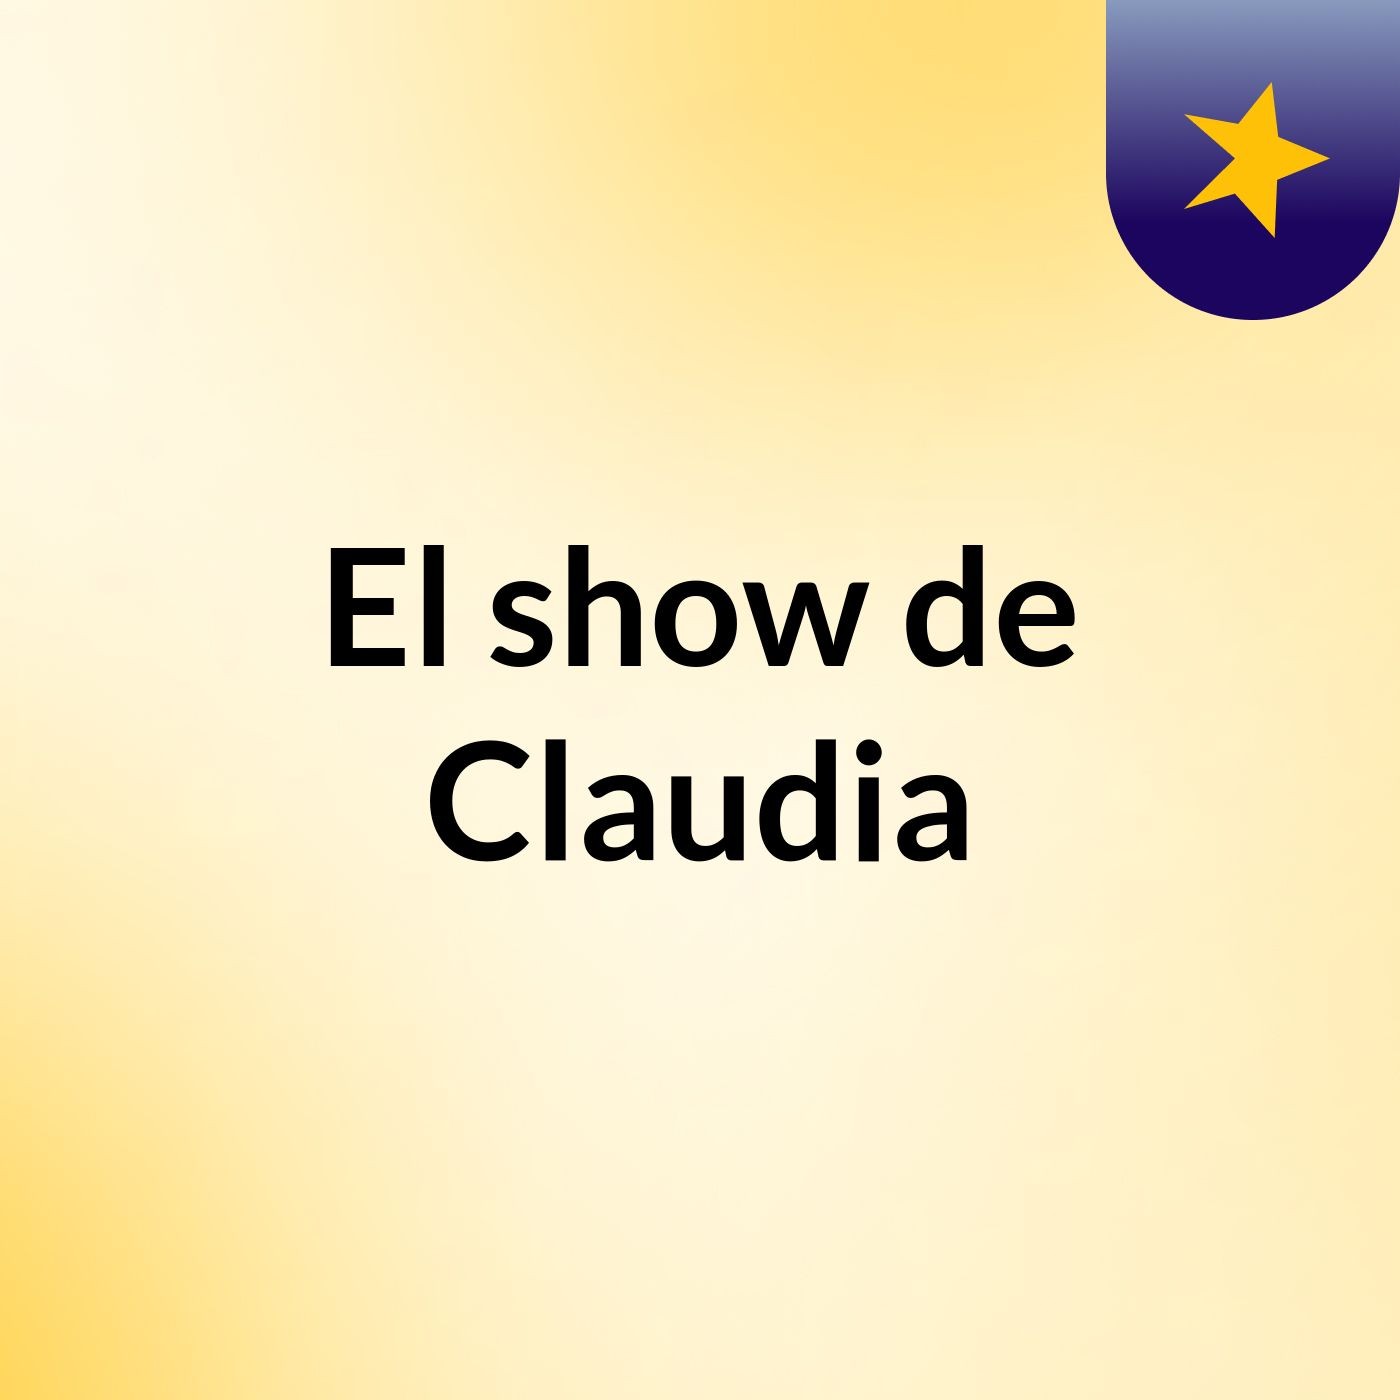 El show de Claudia